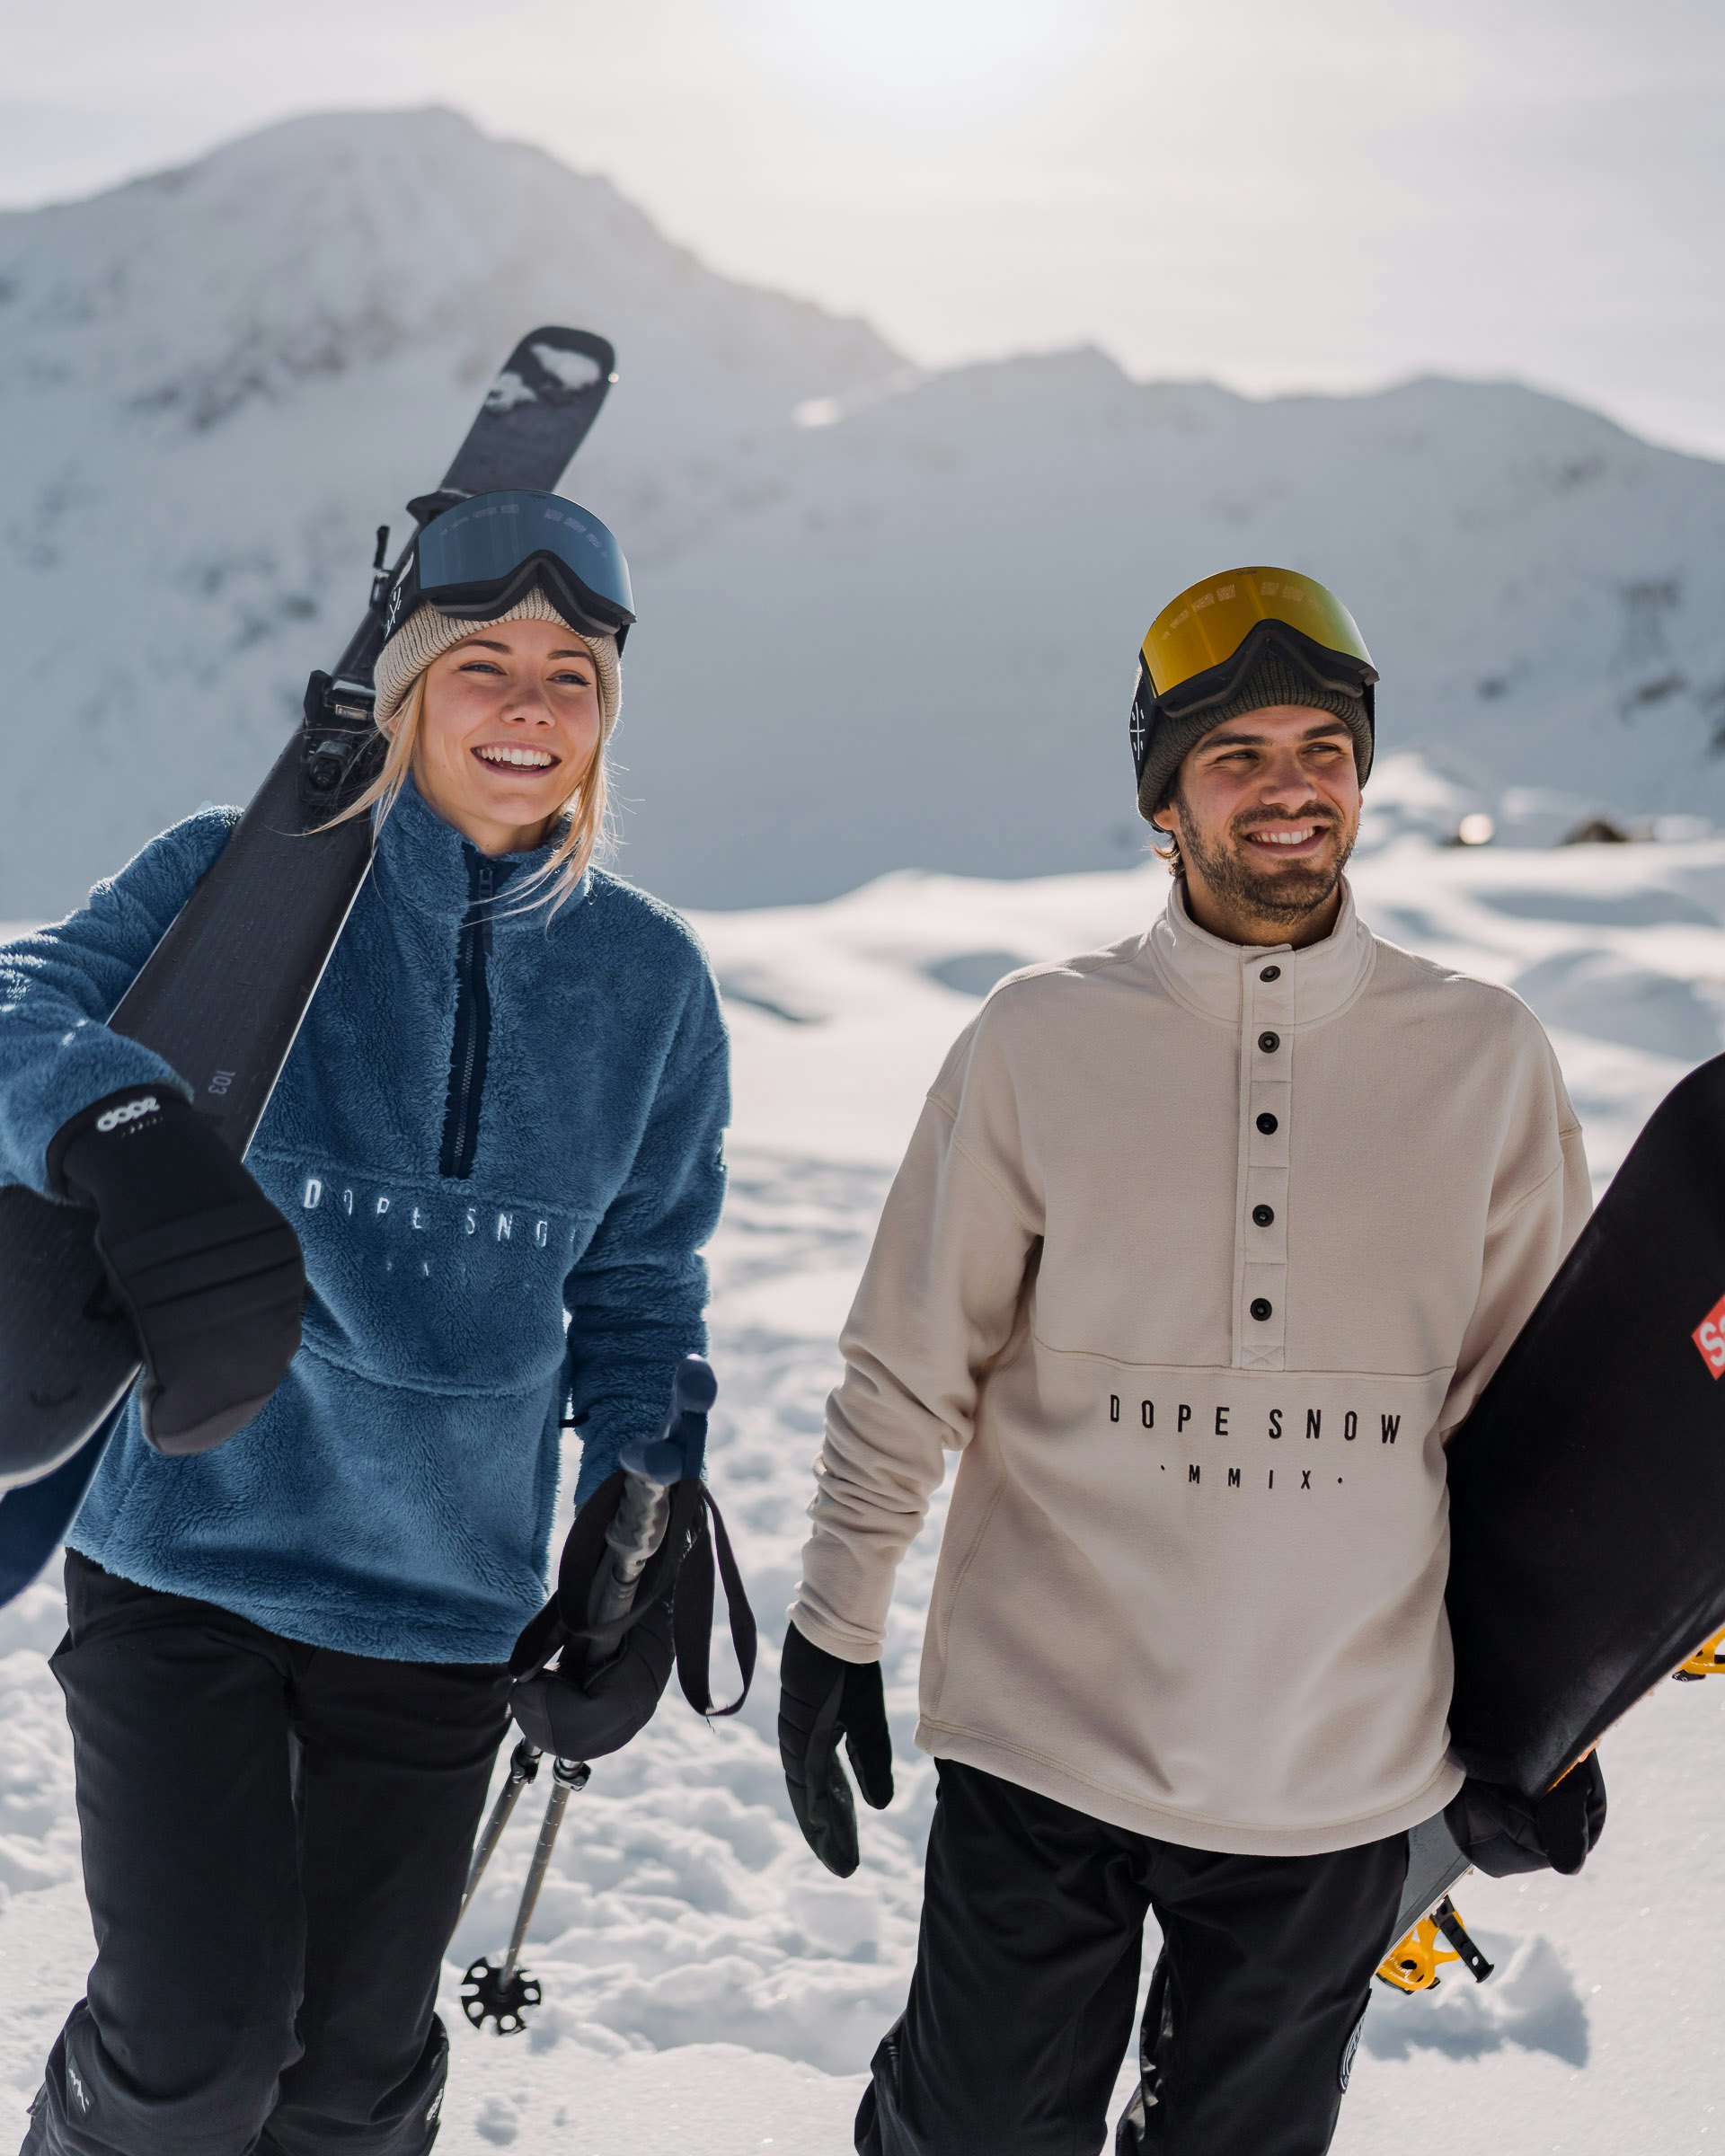 Les 6 accessoires indispensables pour réussir son séjour au ski ! - Ouvrir  le Monde